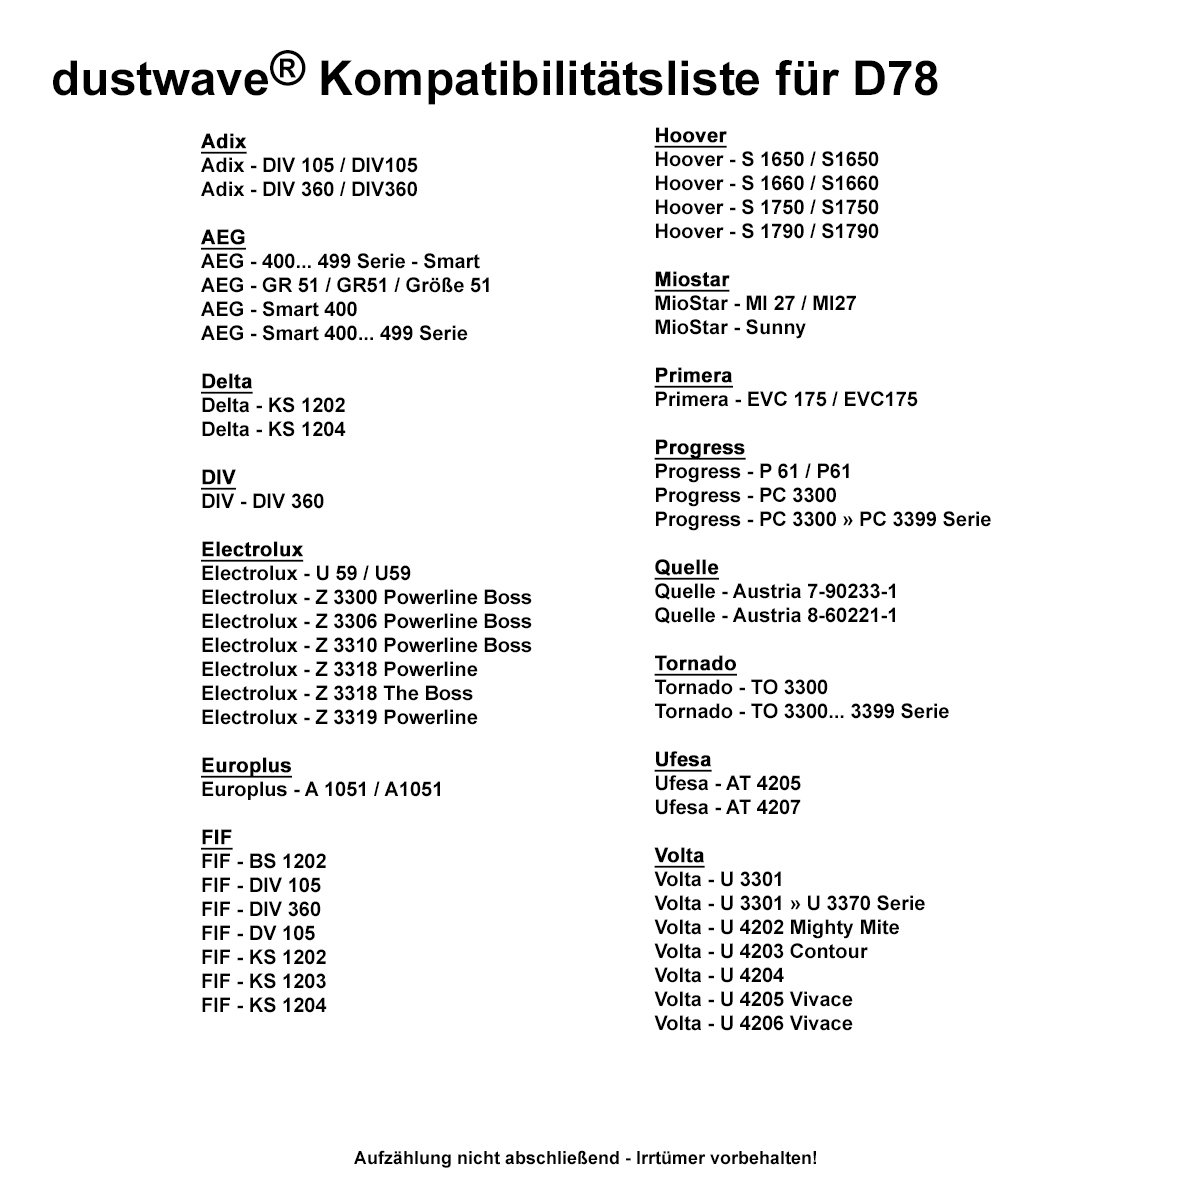 Dustwave® 1 Staubsaugerbeutel für AEG Smart 450 - hocheffizient mit Hygieneverschluss - Made in Germany